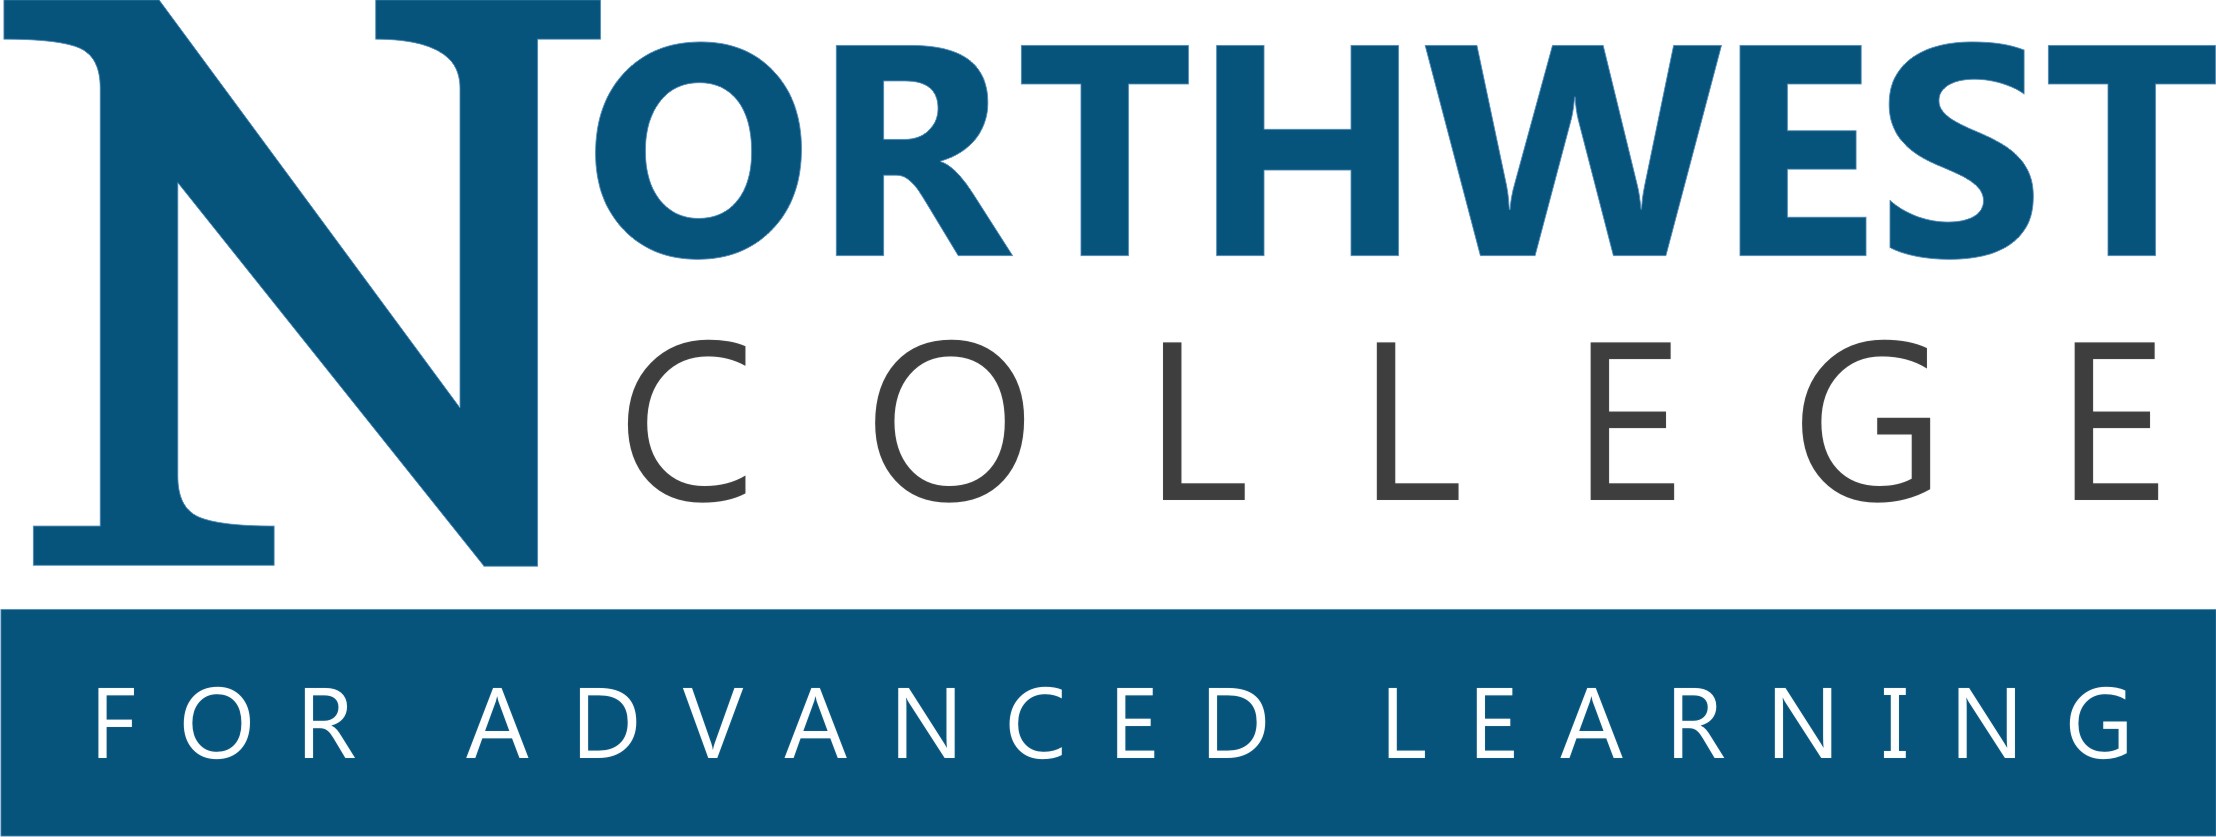 Northwest vista college Logos